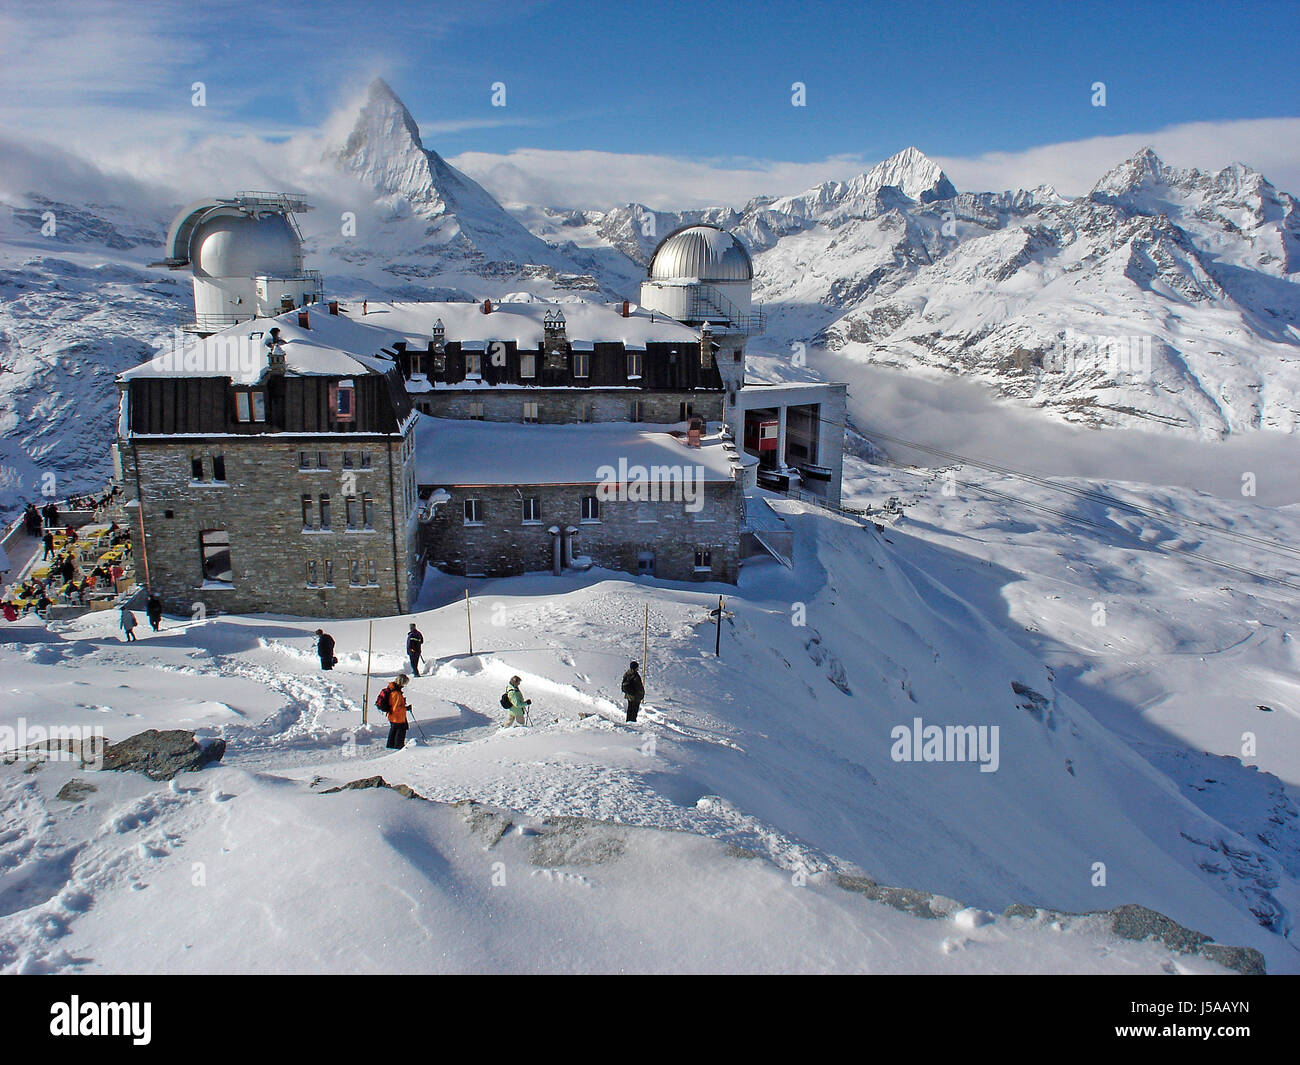 Restaurant Winter Nebel Schweiz Rambler Wetterstation Matterhorn firmament  Stockfotografie - Alamy